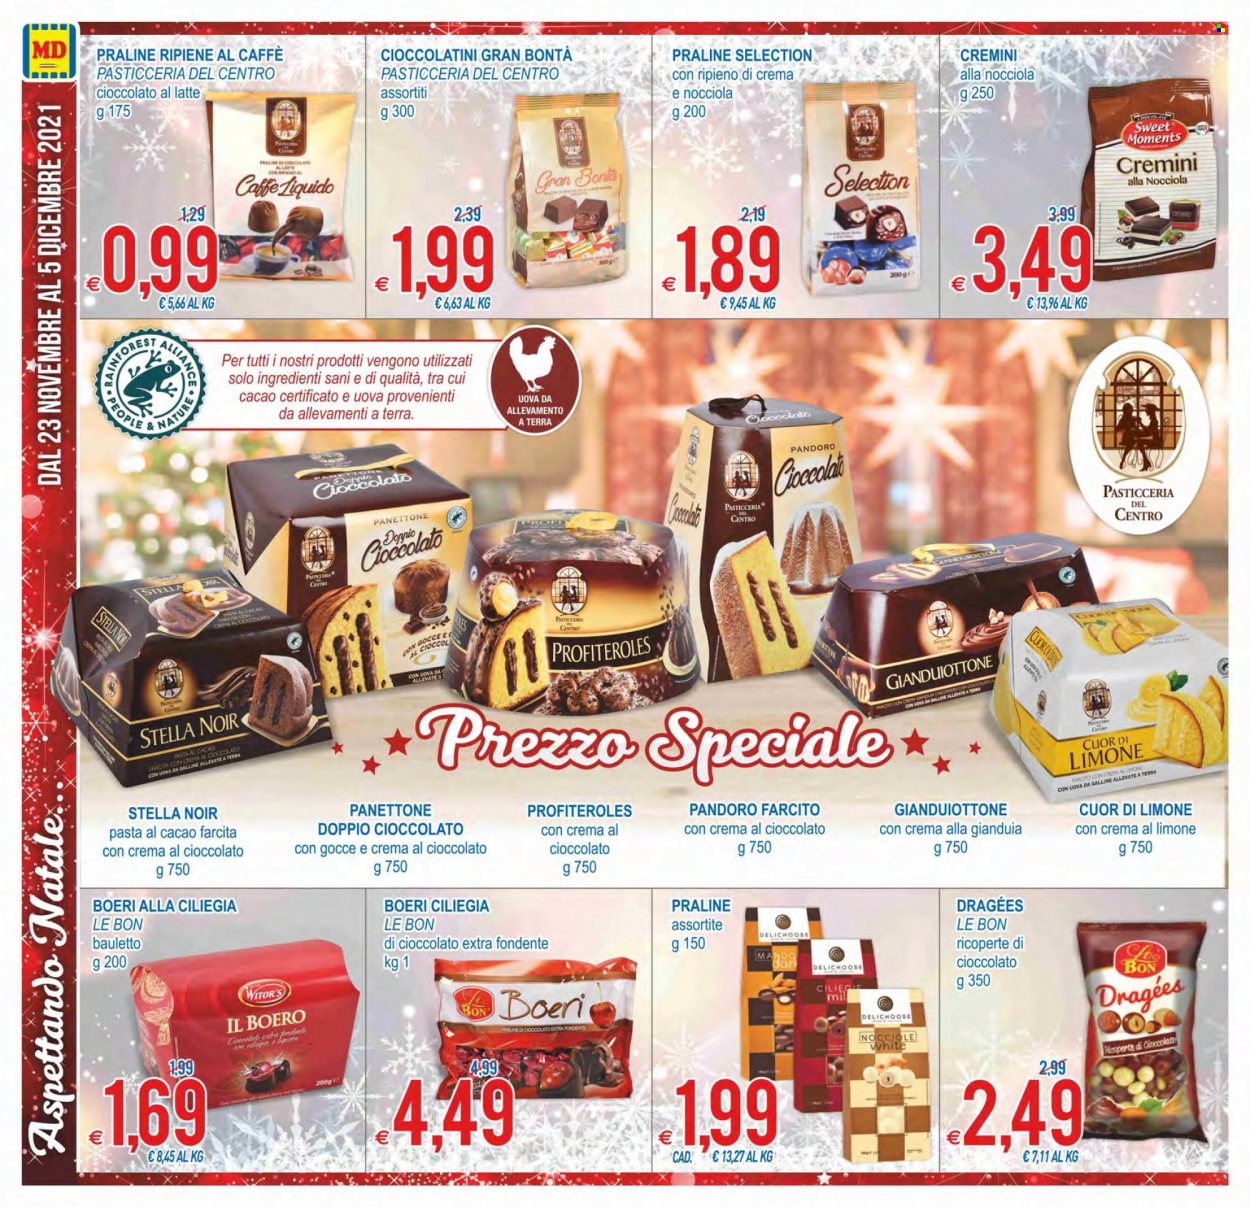 thumbnail - Volantino MD Discount - 23/11/2021 - 5/12/2021 - Prodotti in offerta - bauletto, pandoro, panettone, profiteroles, cioccolato al latte, praline, cioccolatini. Pagina 10.